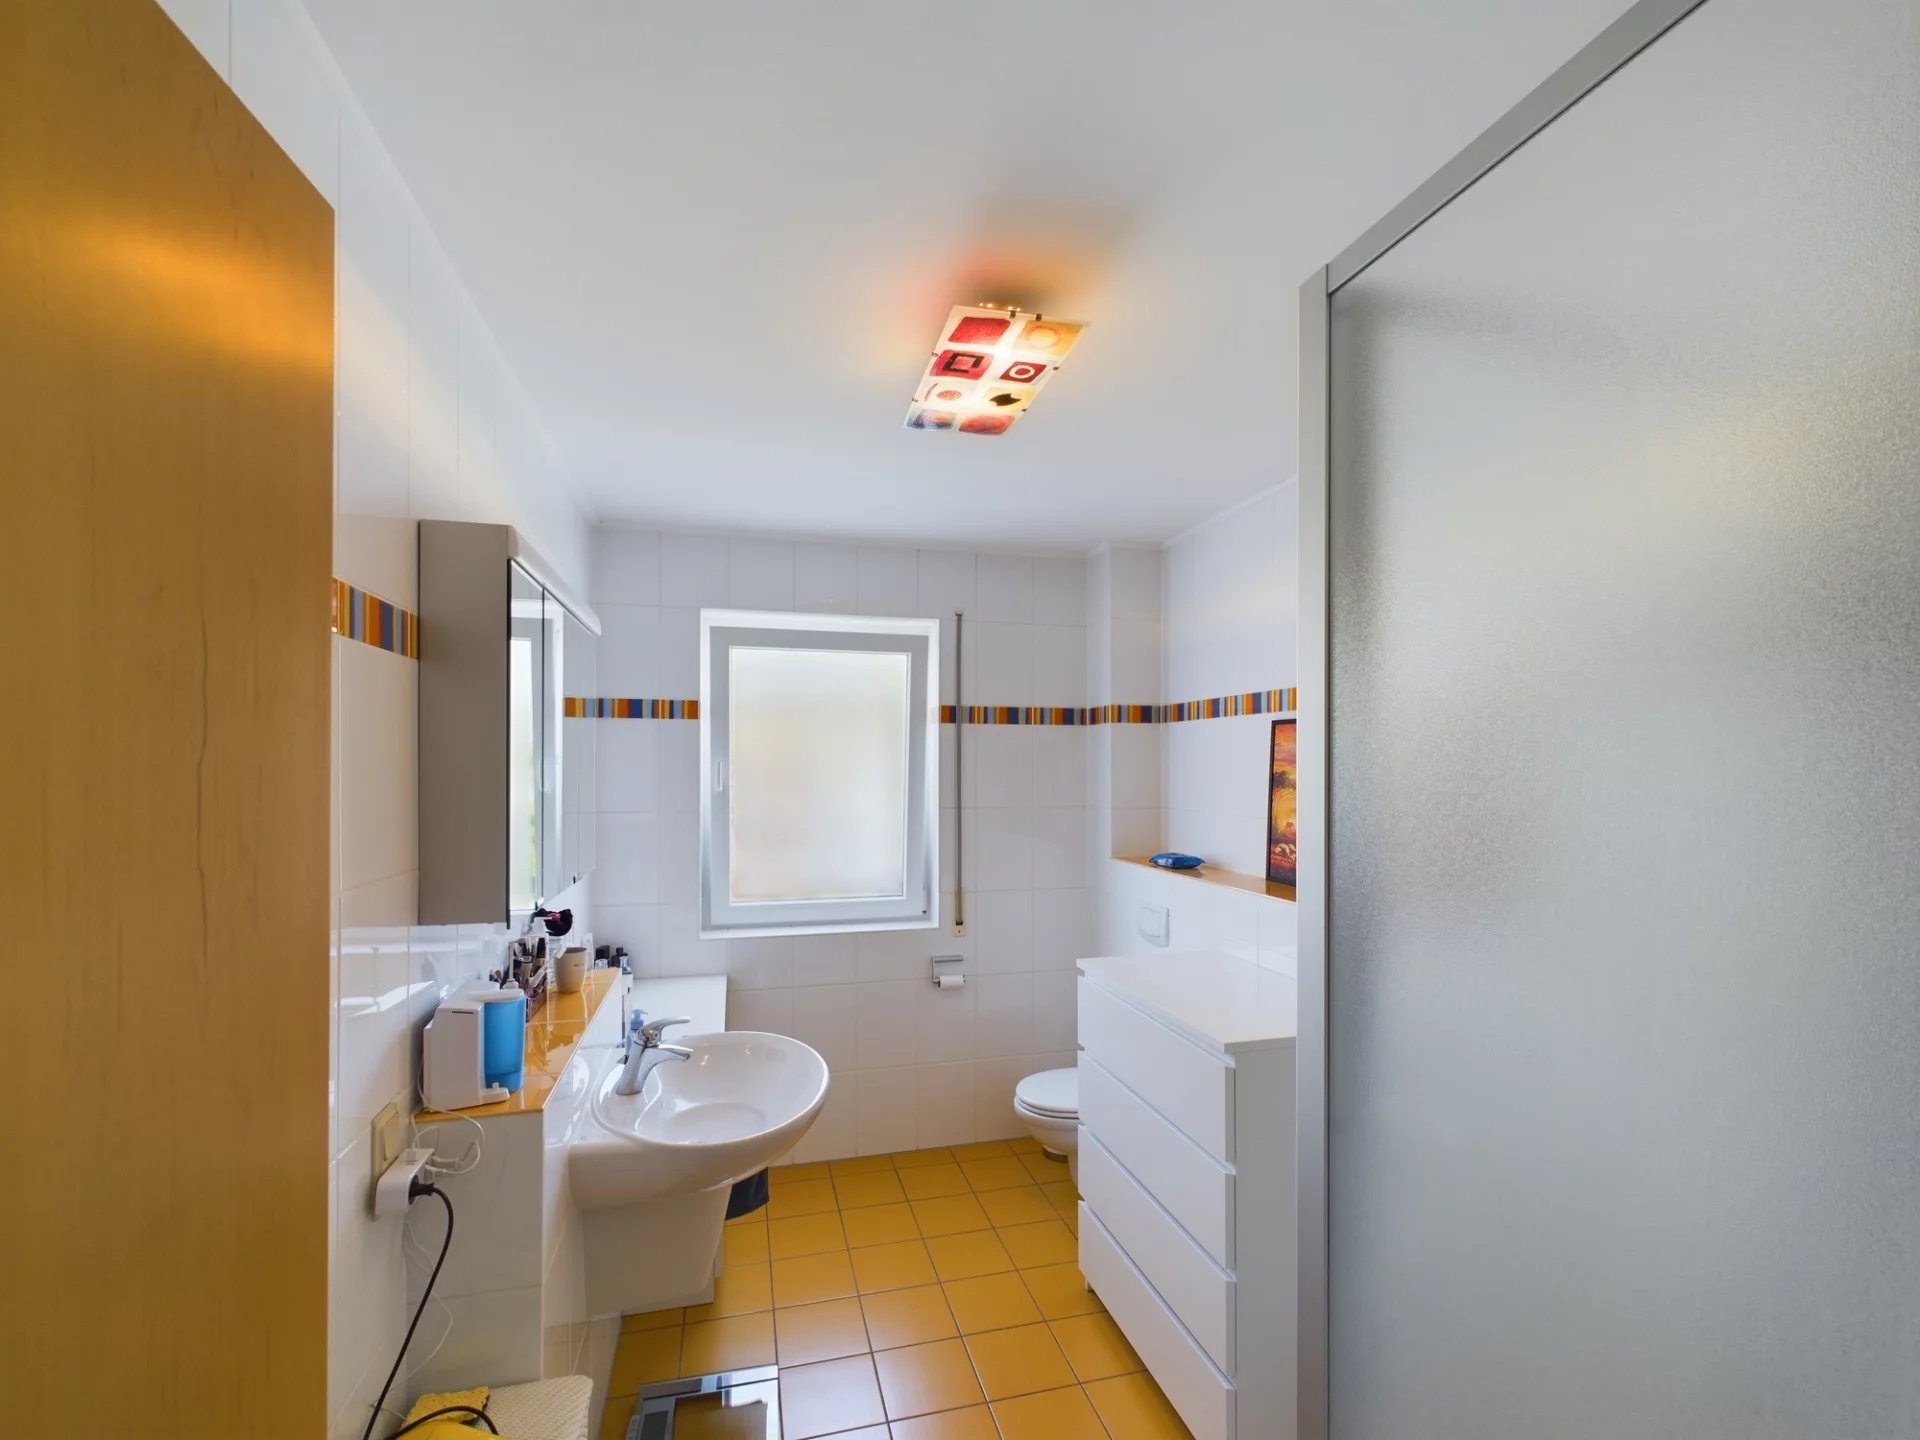 2-bedroom apartment for rent in Echternach